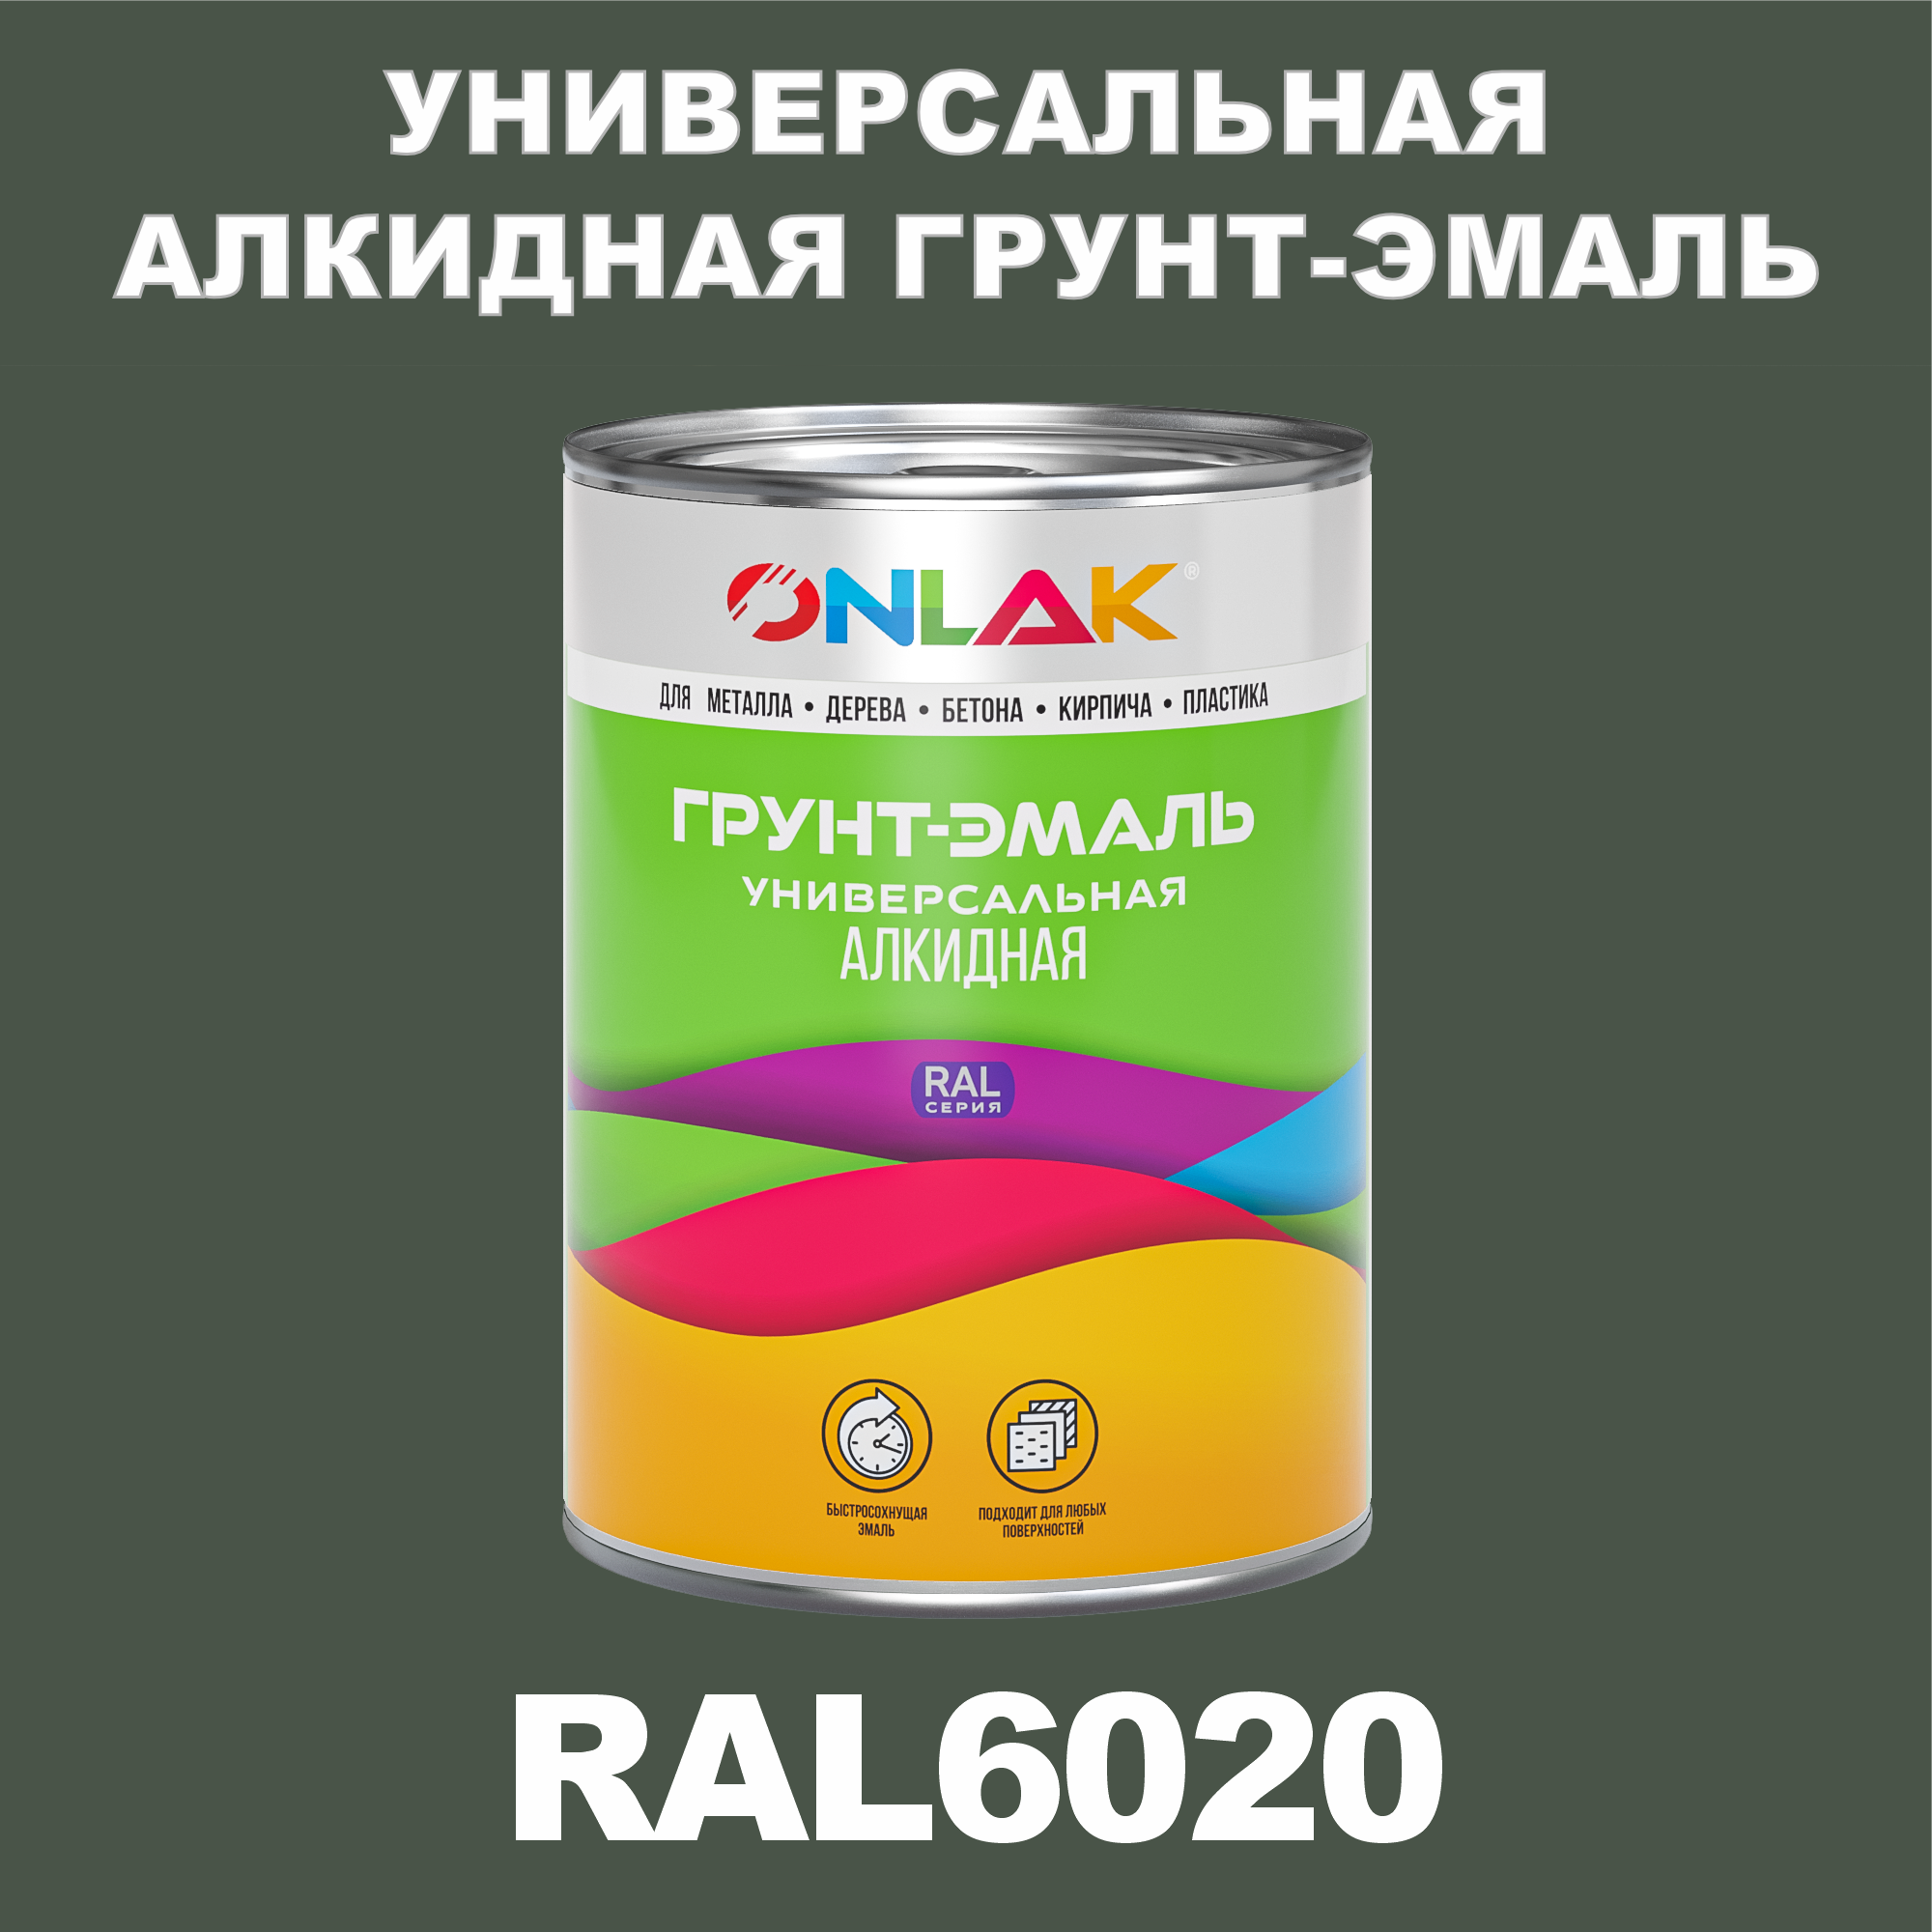 Грунт-эмаль ONLAK 1К RAL6020 антикоррозионная алкидная по металлу по ржавчине 1 кг